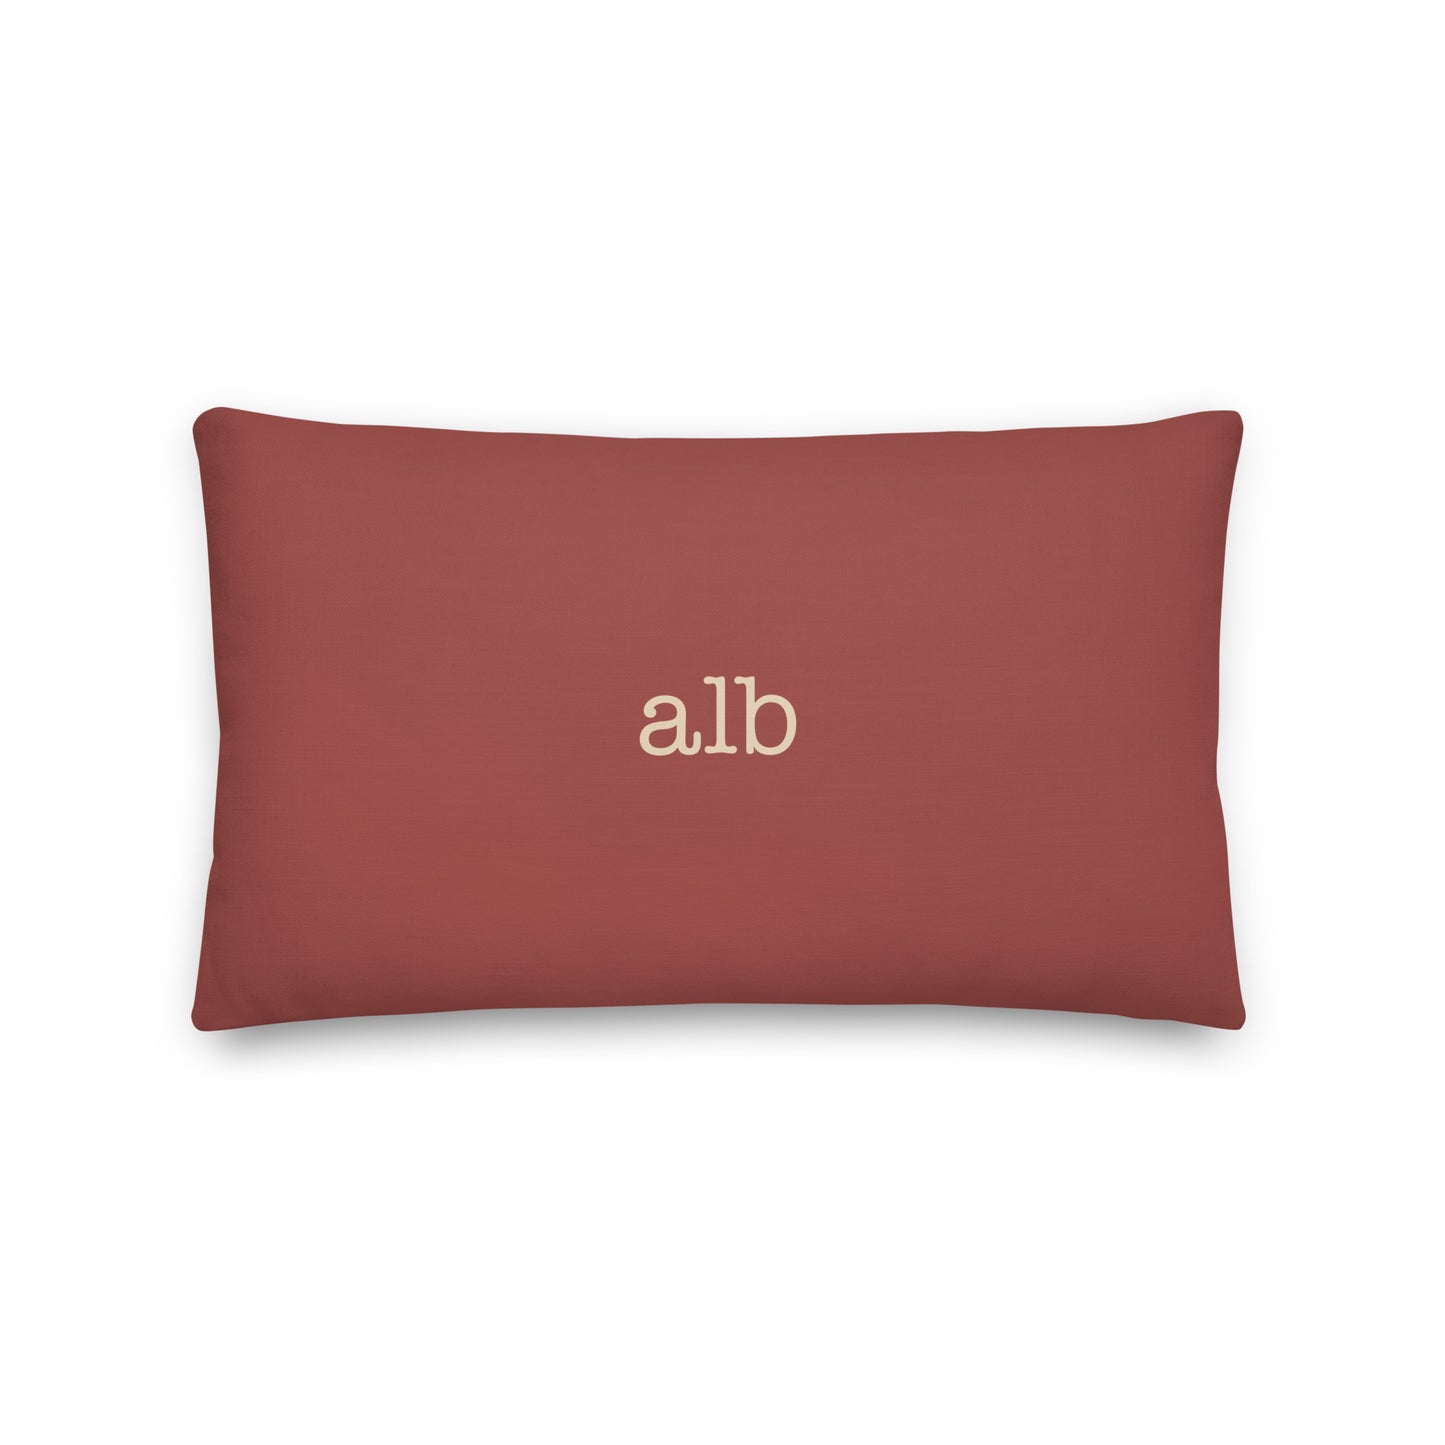 Typewriter Pillow - Terra Cotta • ALB Albany • YHM Designs - Image 02